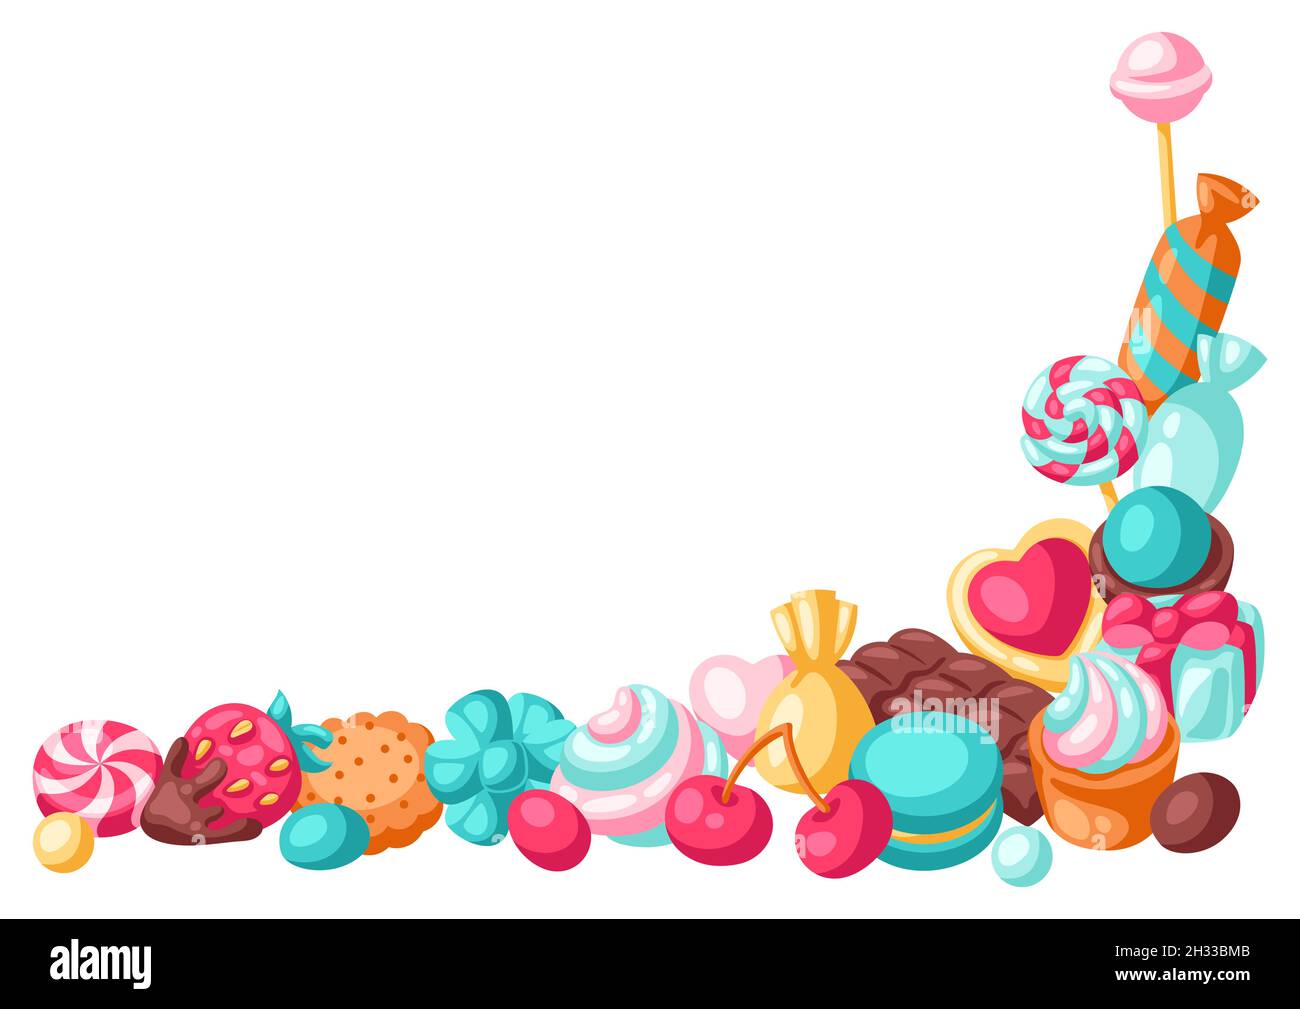 Rahmen mit verschiedenen Süßigkeiten und Süßigkeiten. Stilisierte Illustration für Süßwaren oder Backwaren. Stock Vektor